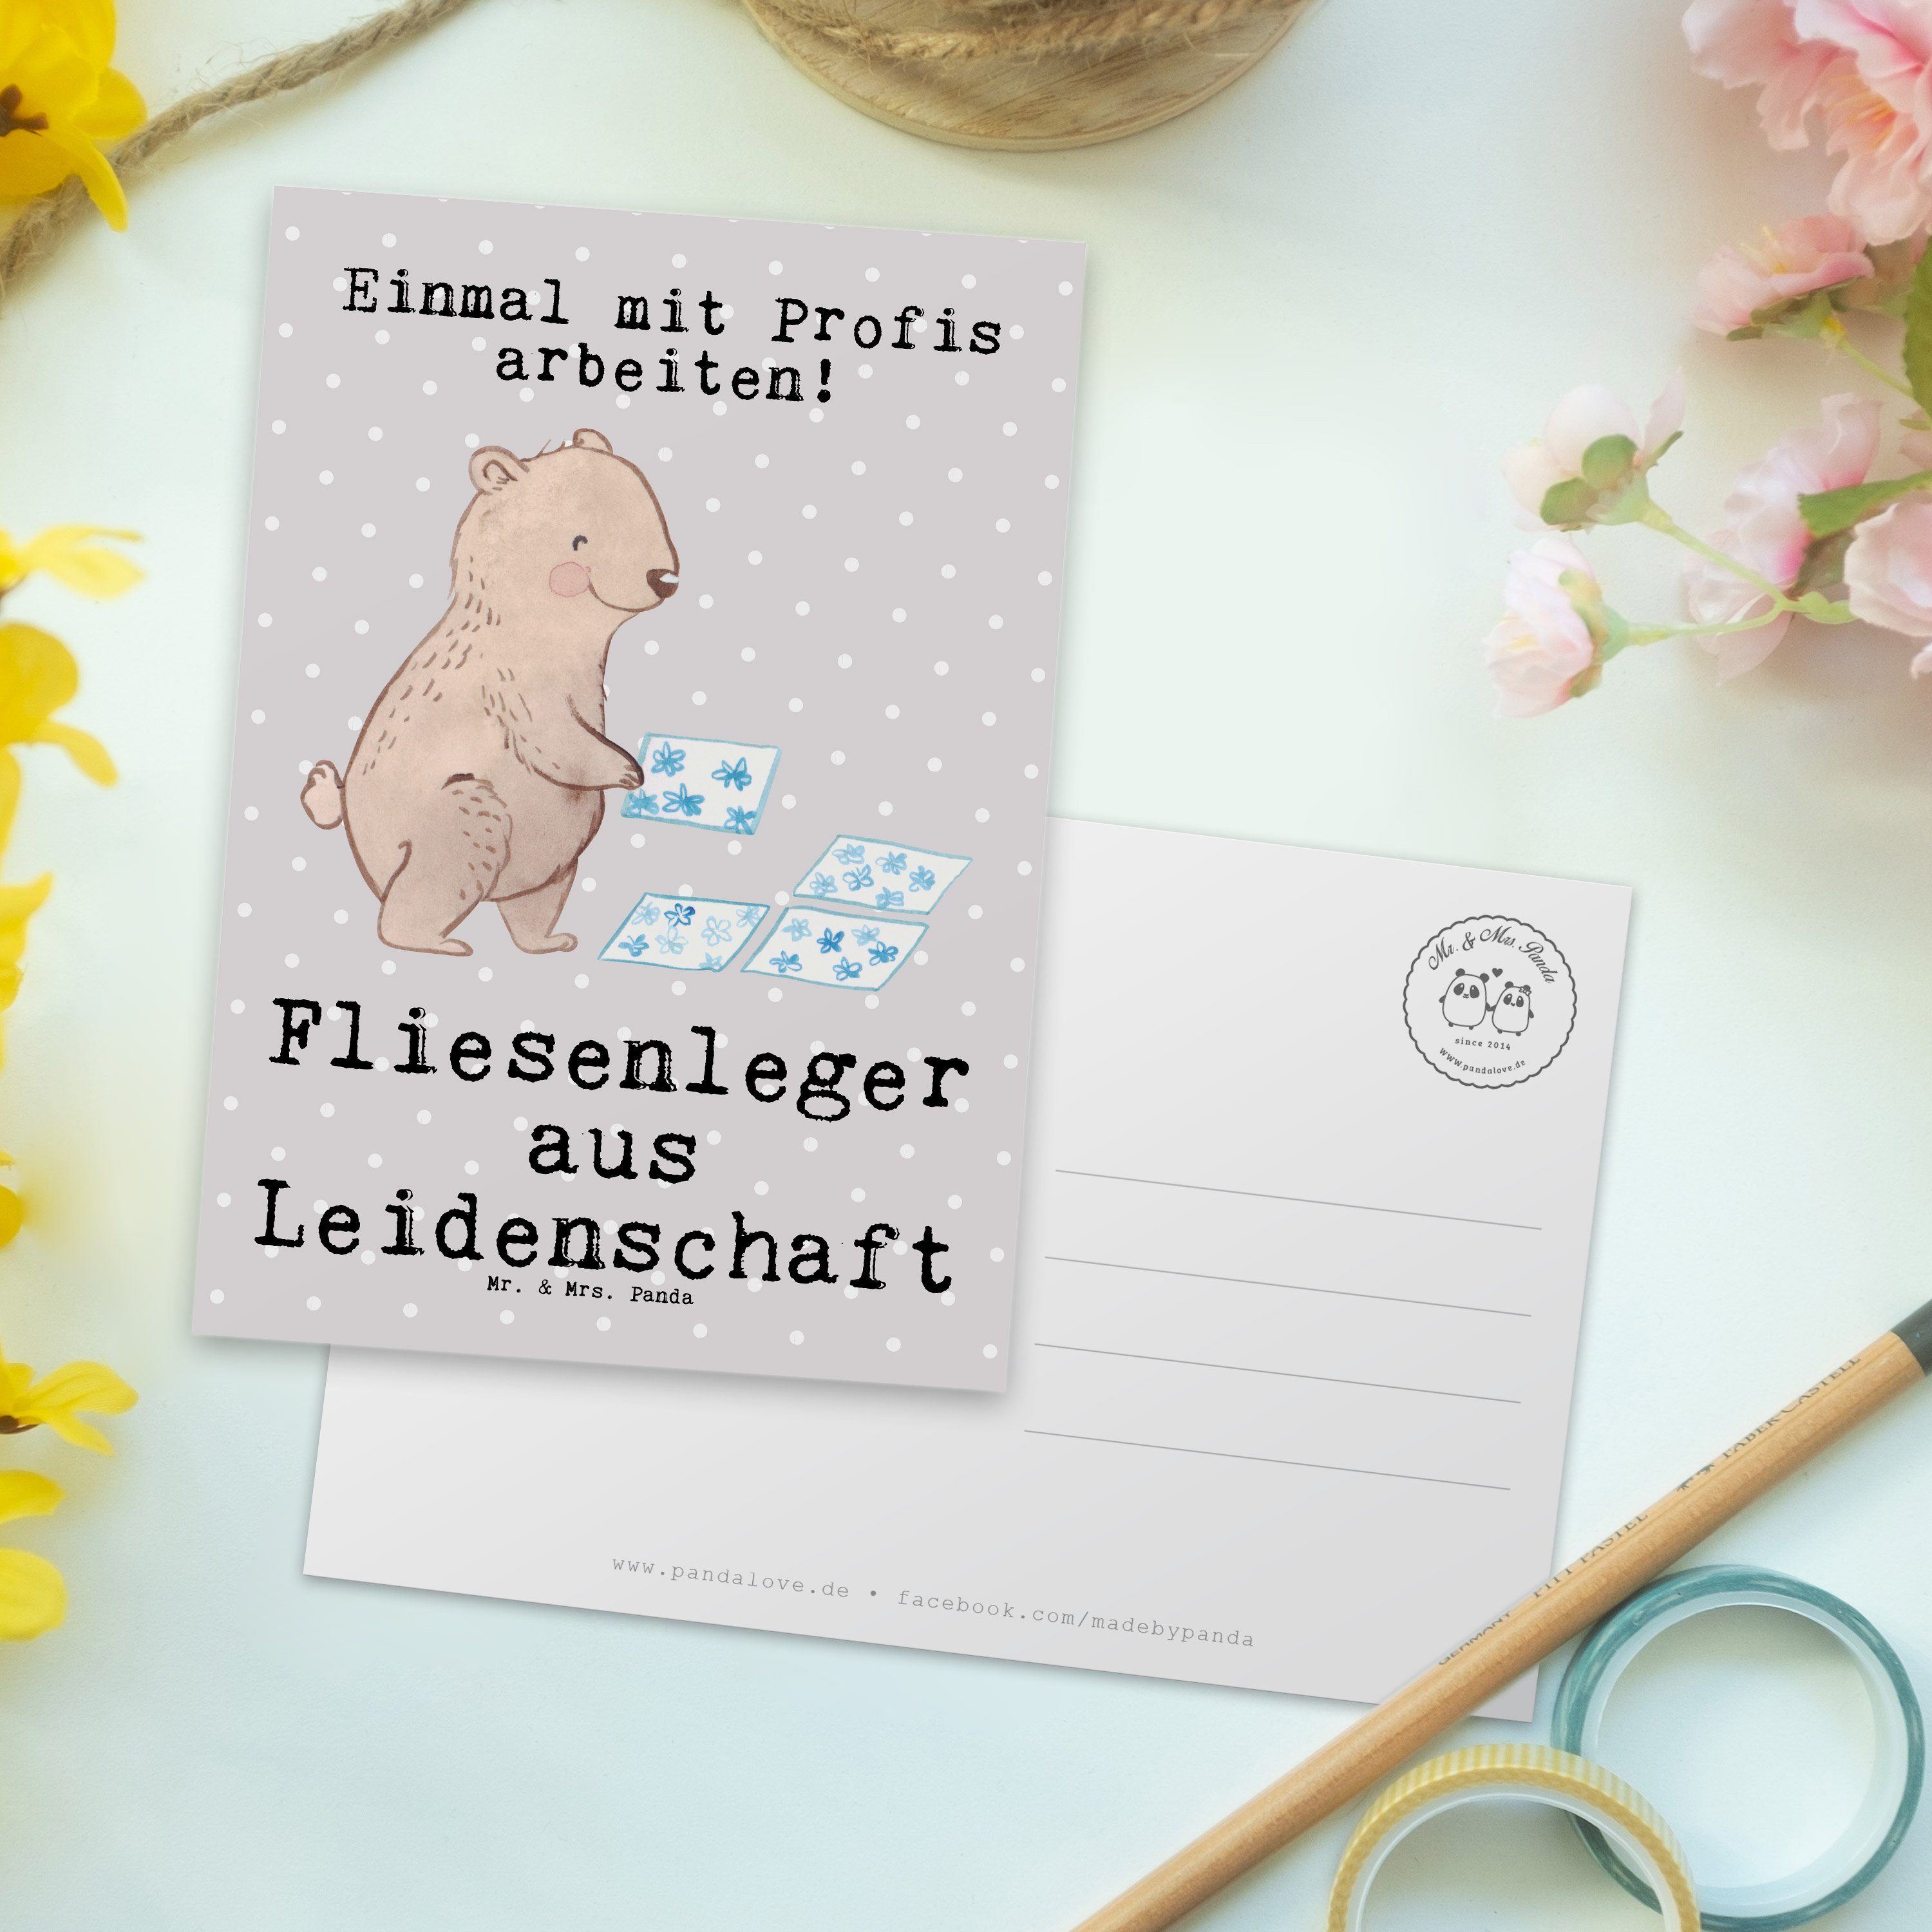 Postkarte & Fliesenleger aus Geschenk, Panda Mrs. - Leidenschaft Gesellenprüf - Grau Mr. Pastell